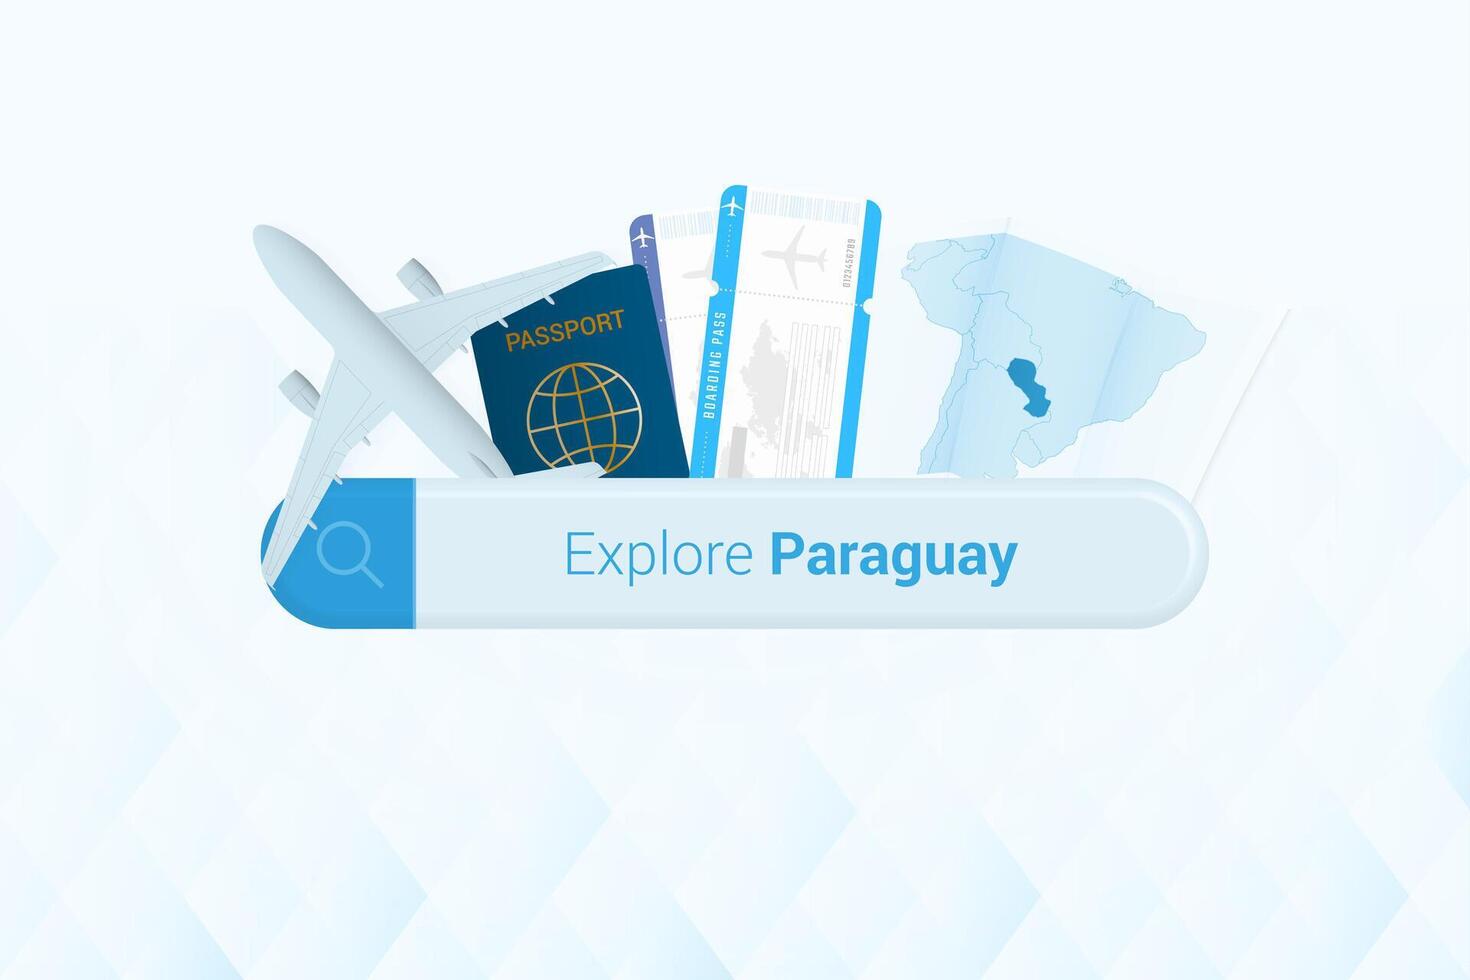 recherche des billets à paraguay ou Voyage destination dans paraguay. recherche bar avec avion, passeport, embarquement passer, des billets et carte. vecteur